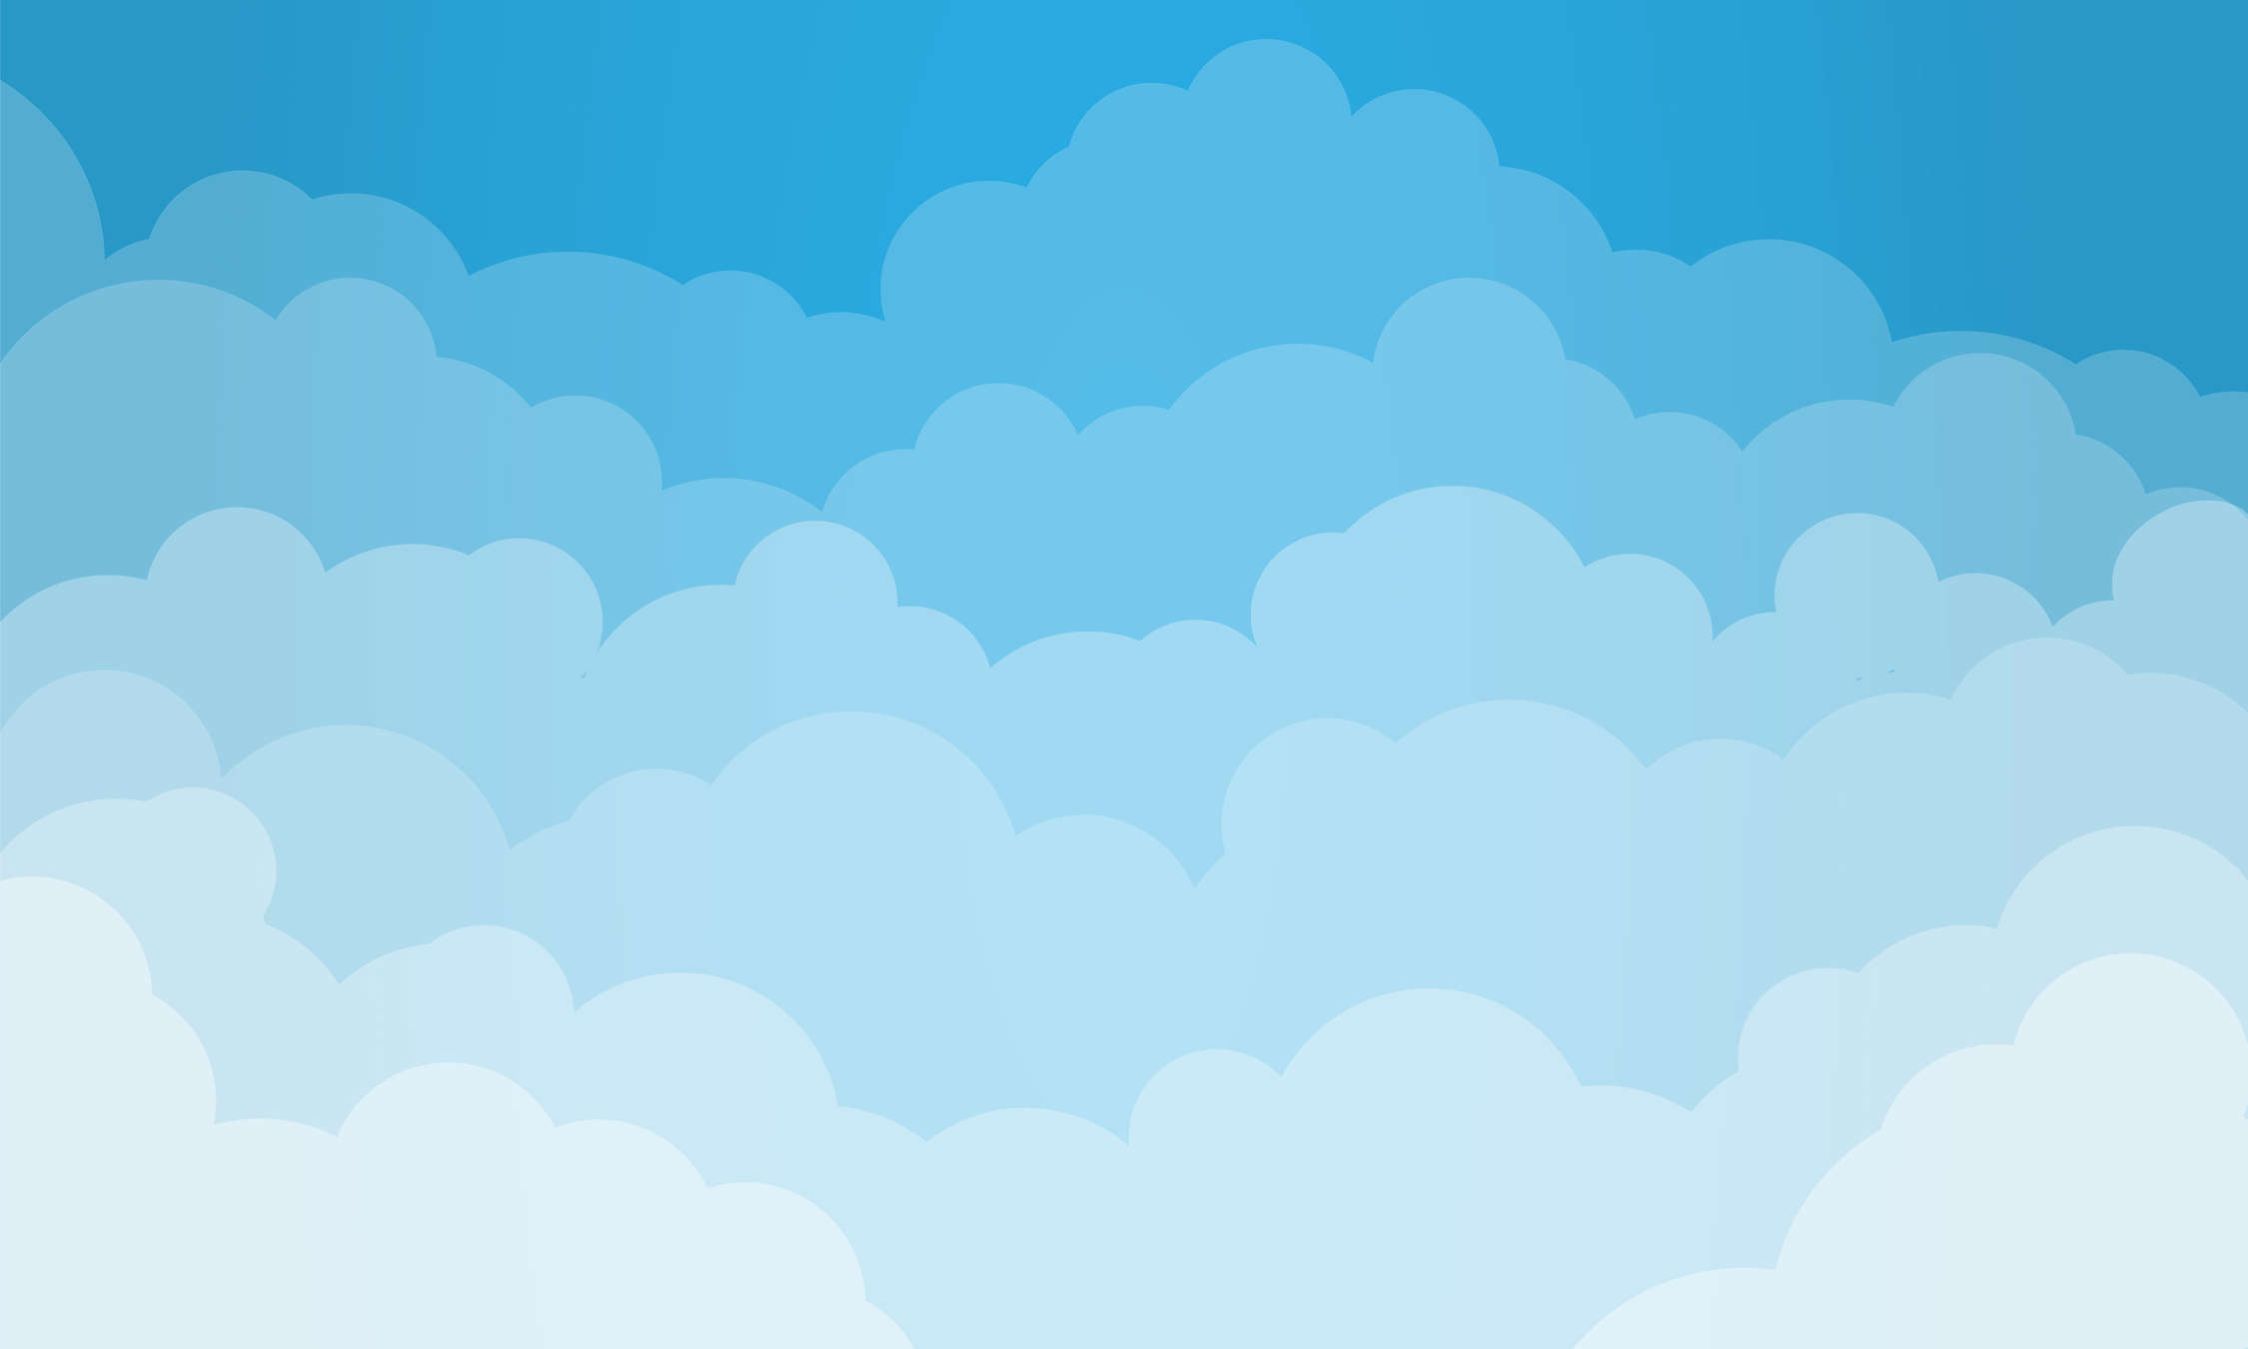             Digital behang lucht met wolken in komische stijl - structuurvlies
        